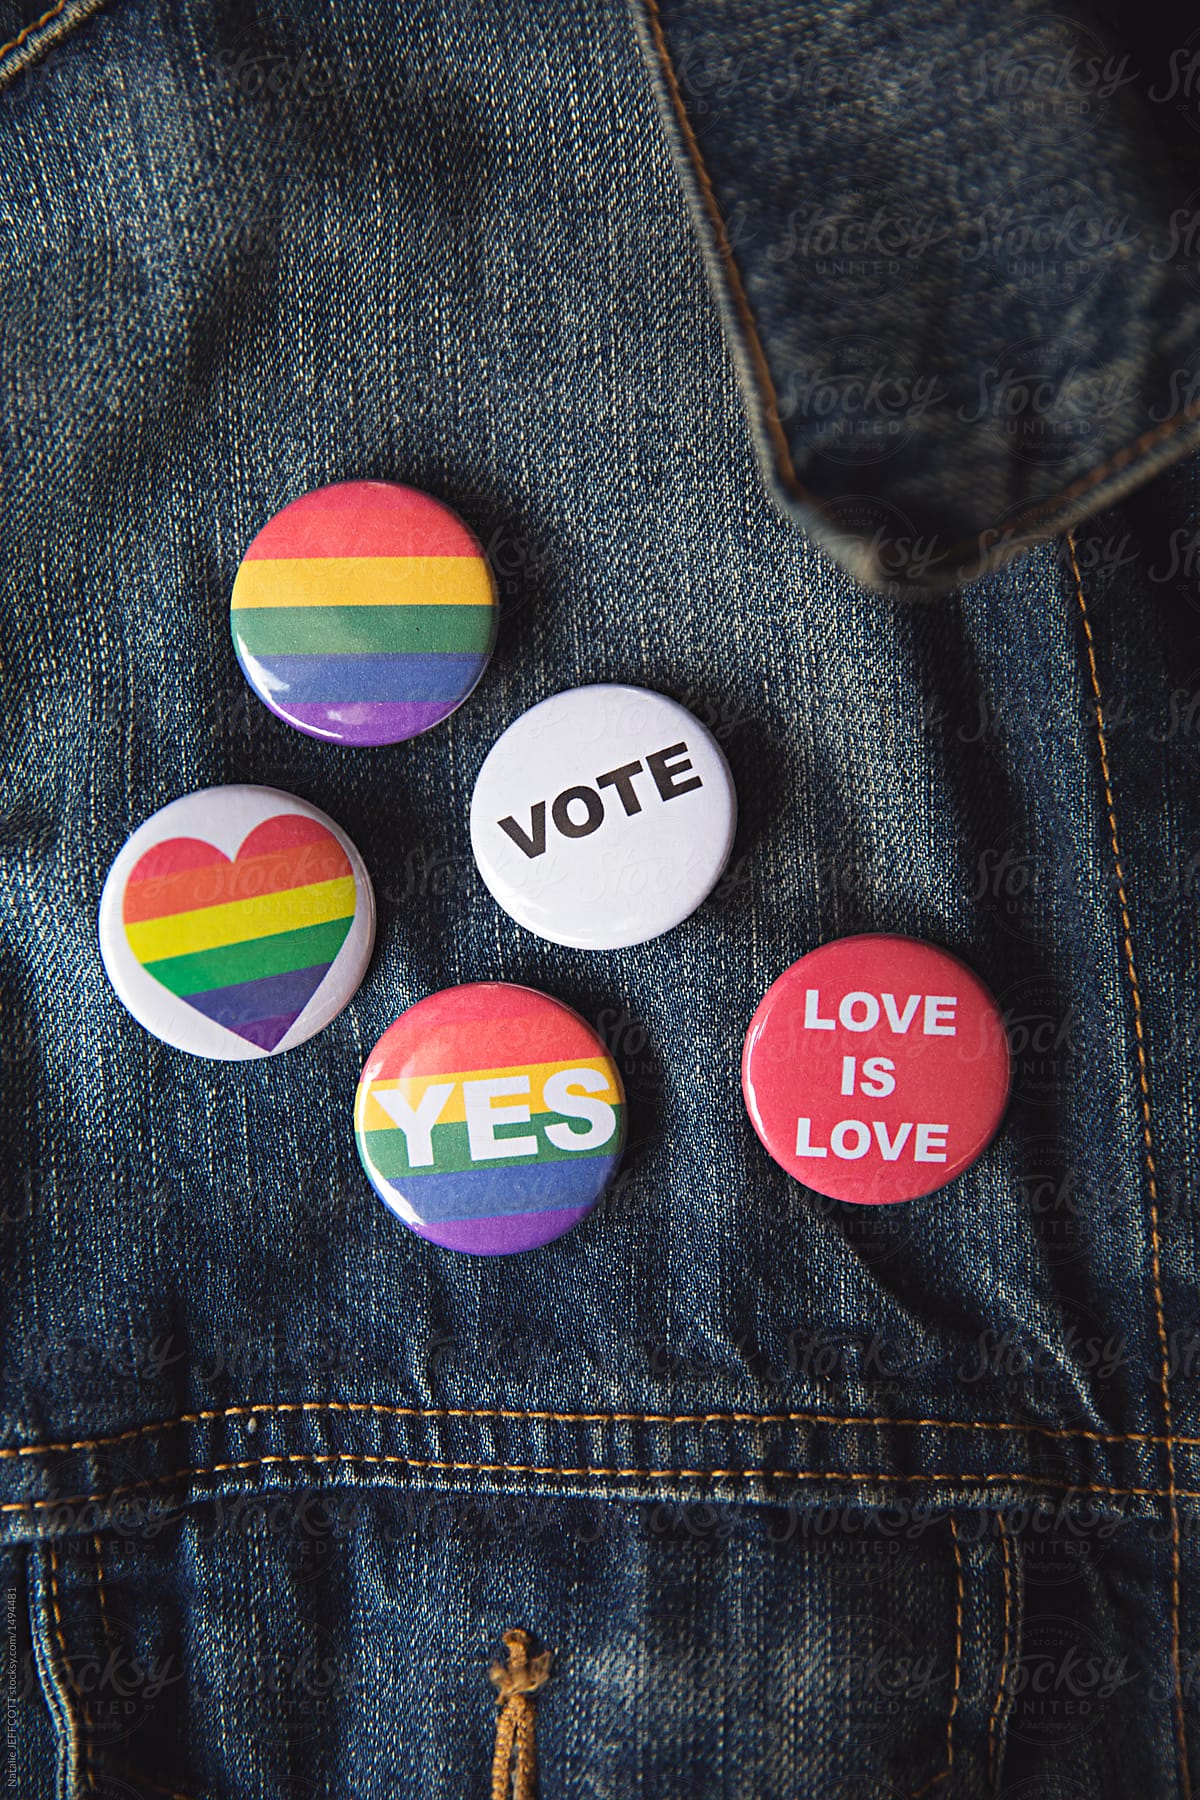 Concept for Marriage equality plebiscite vote in Australia